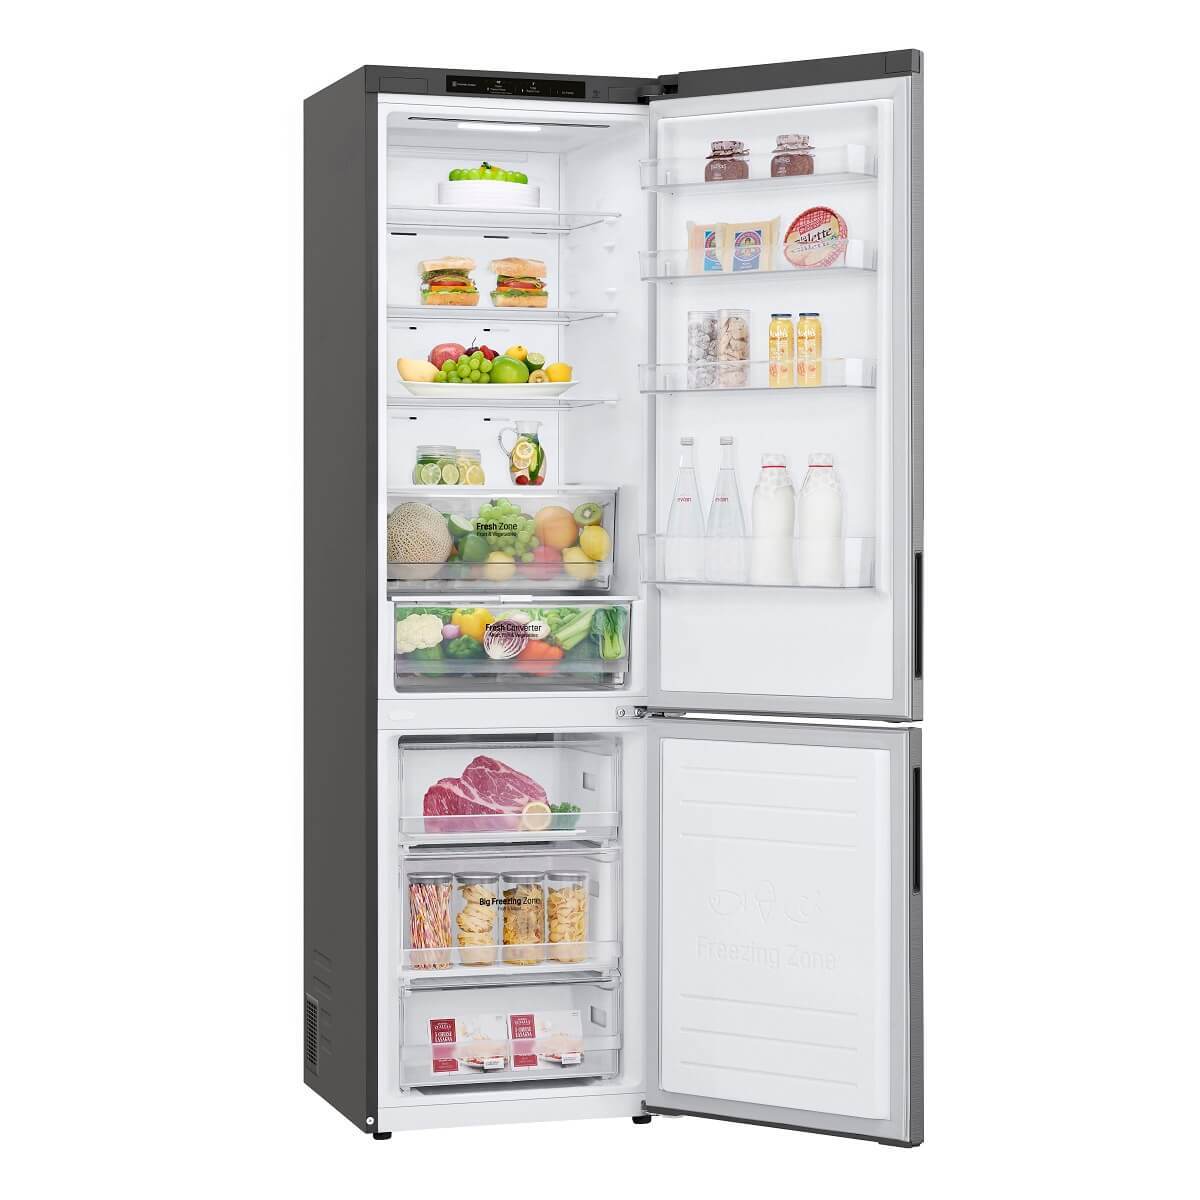 Kombinovaná chladnička s mrazničkou dole LG GBP62PZNAC